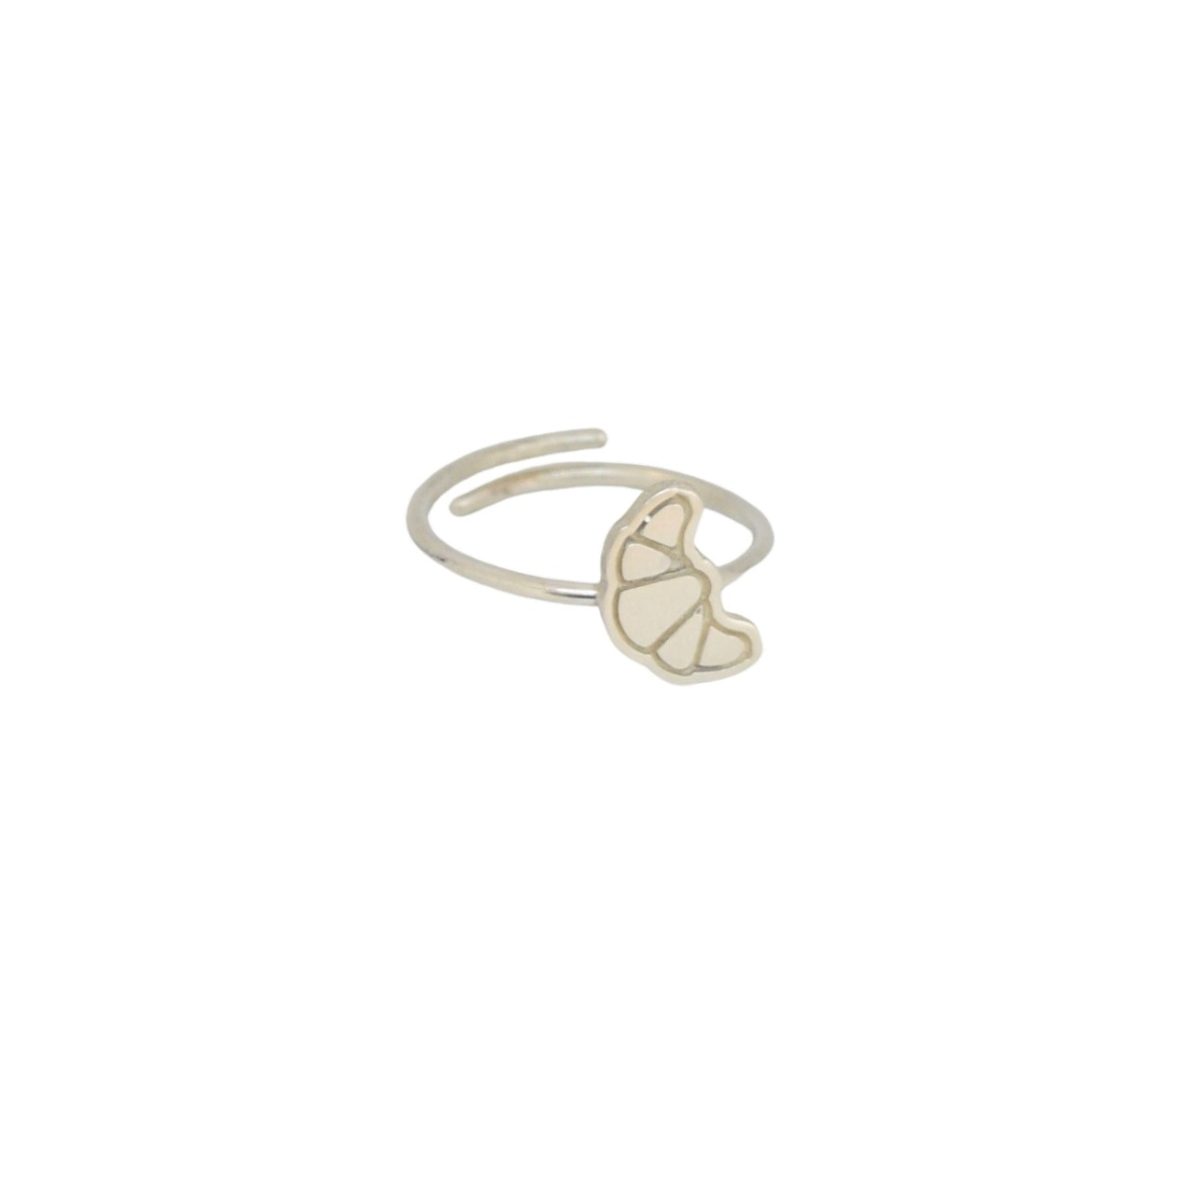 “Croissant” ασημένιο δαχτυλίδι “Croissant” ασημένιο δαχτυλίδι “Croissant” ασημένιο δαχτυλίδι 4